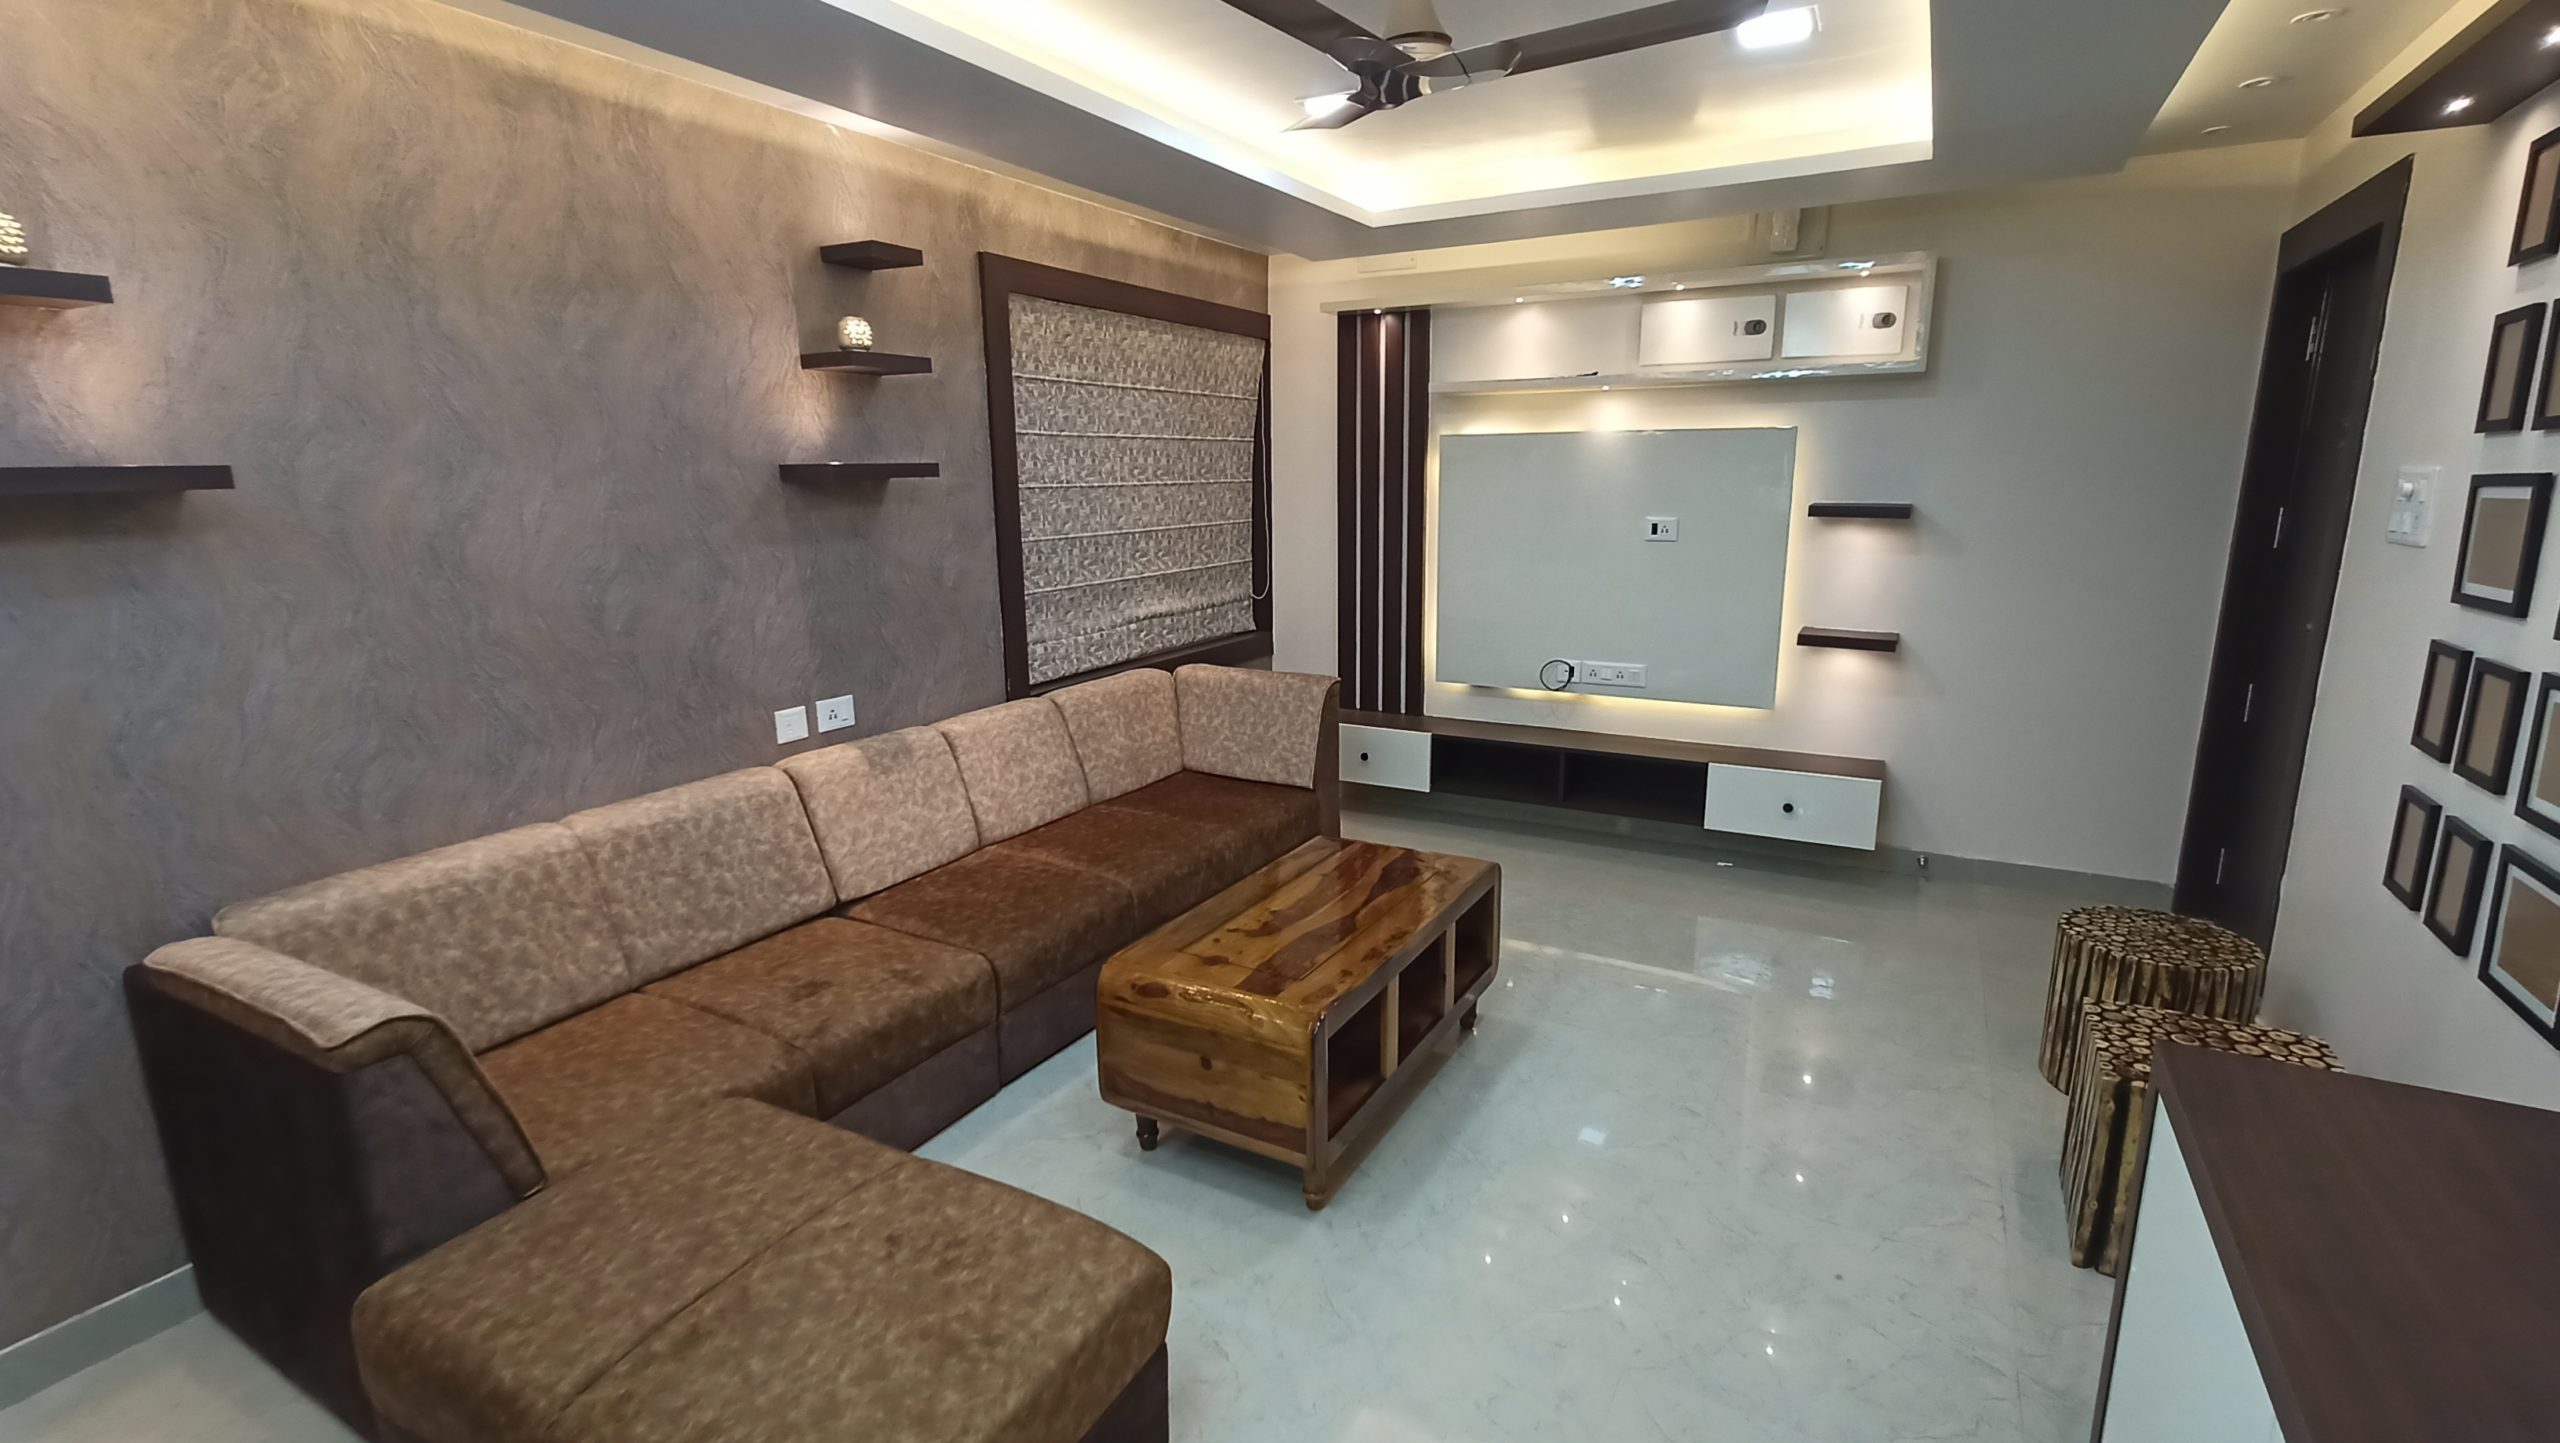 3BHK Apartment Interior Designed in Bangalore | Design Cafe